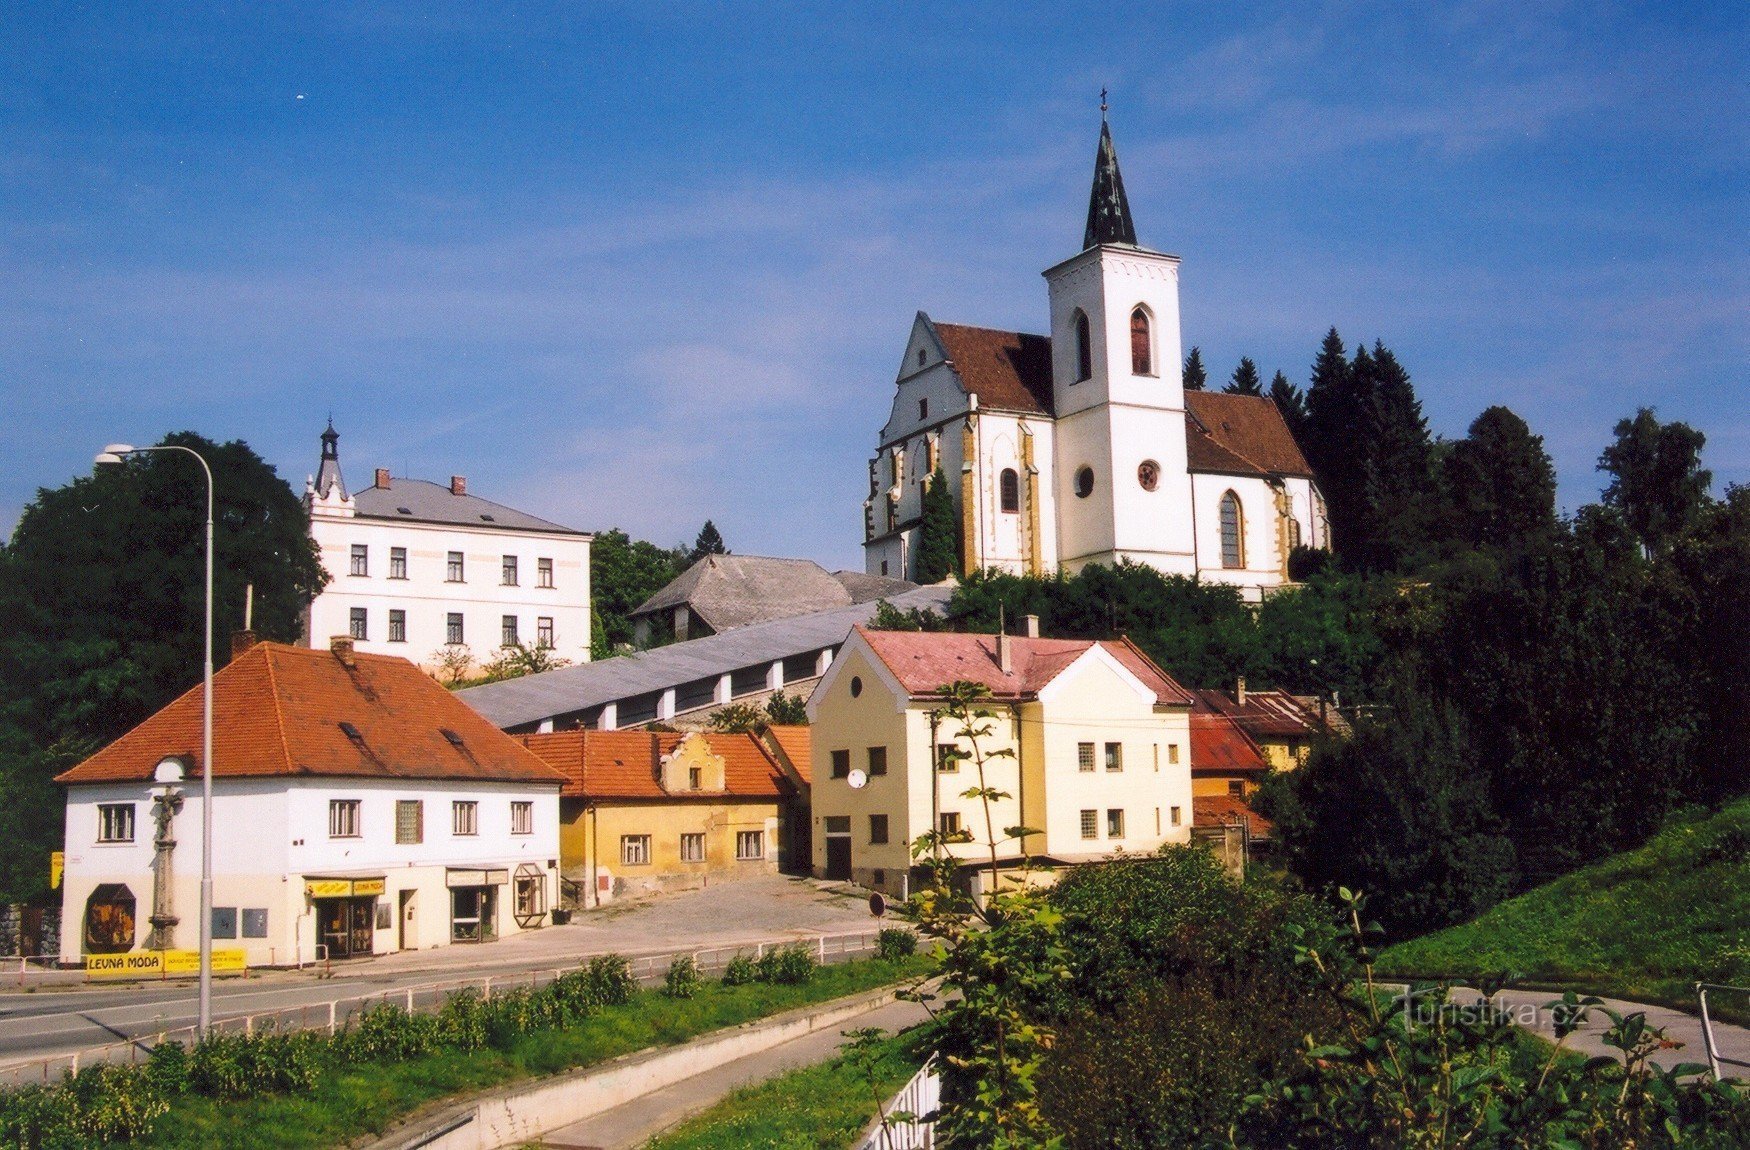 Letovice - Church of St. Prokopa med täckt trappa